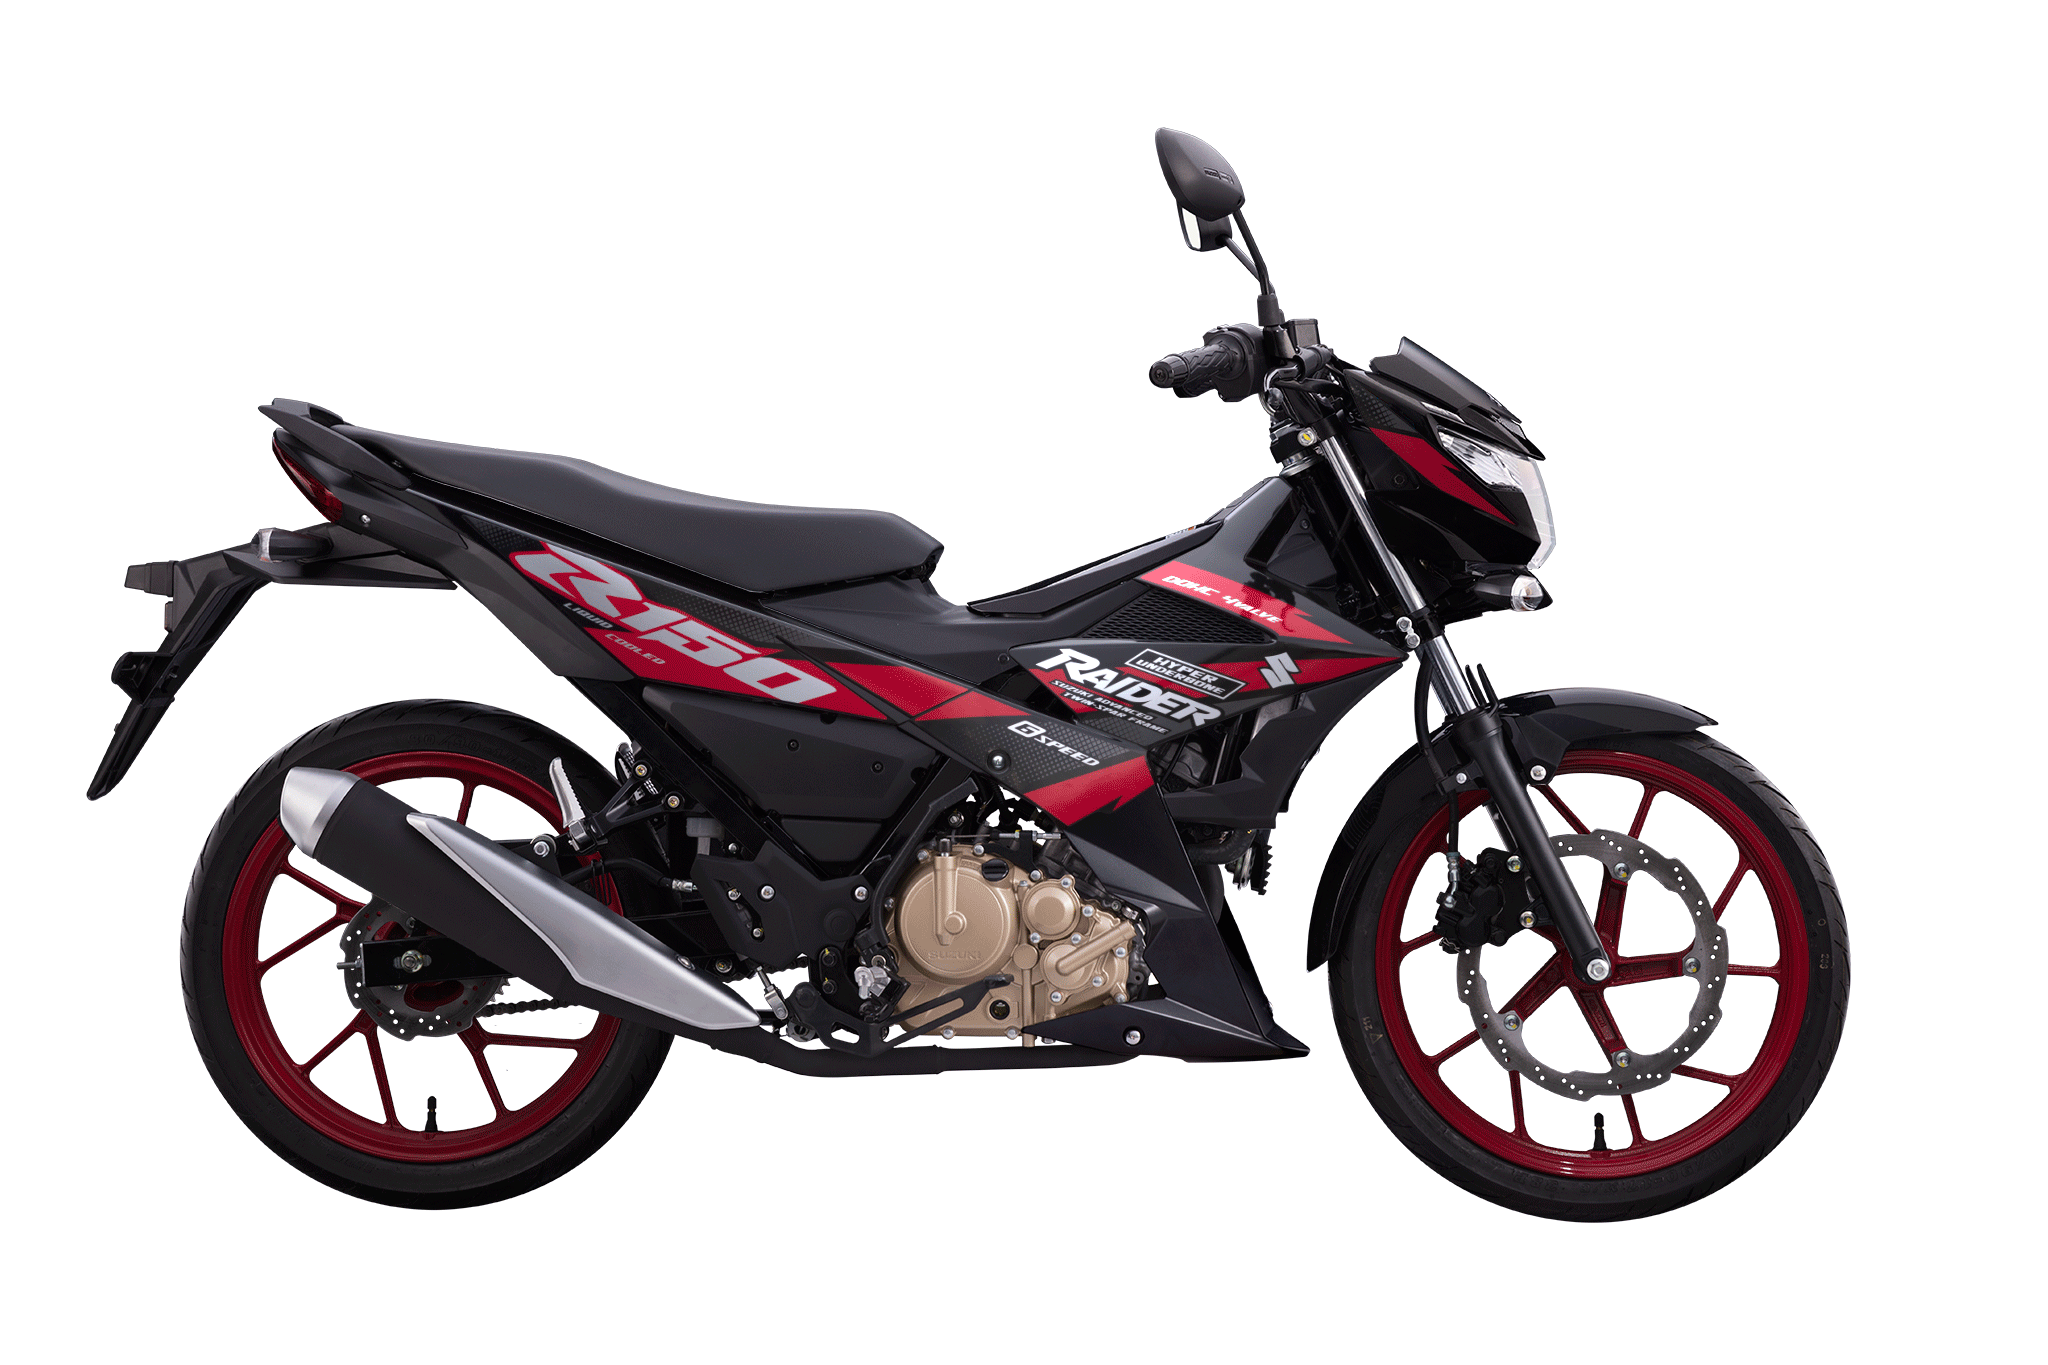 Cạnh tranh Yamaha Exciter, Suzuki Raider tung phiên bản mới tại Việt Nam - Ảnh 1.